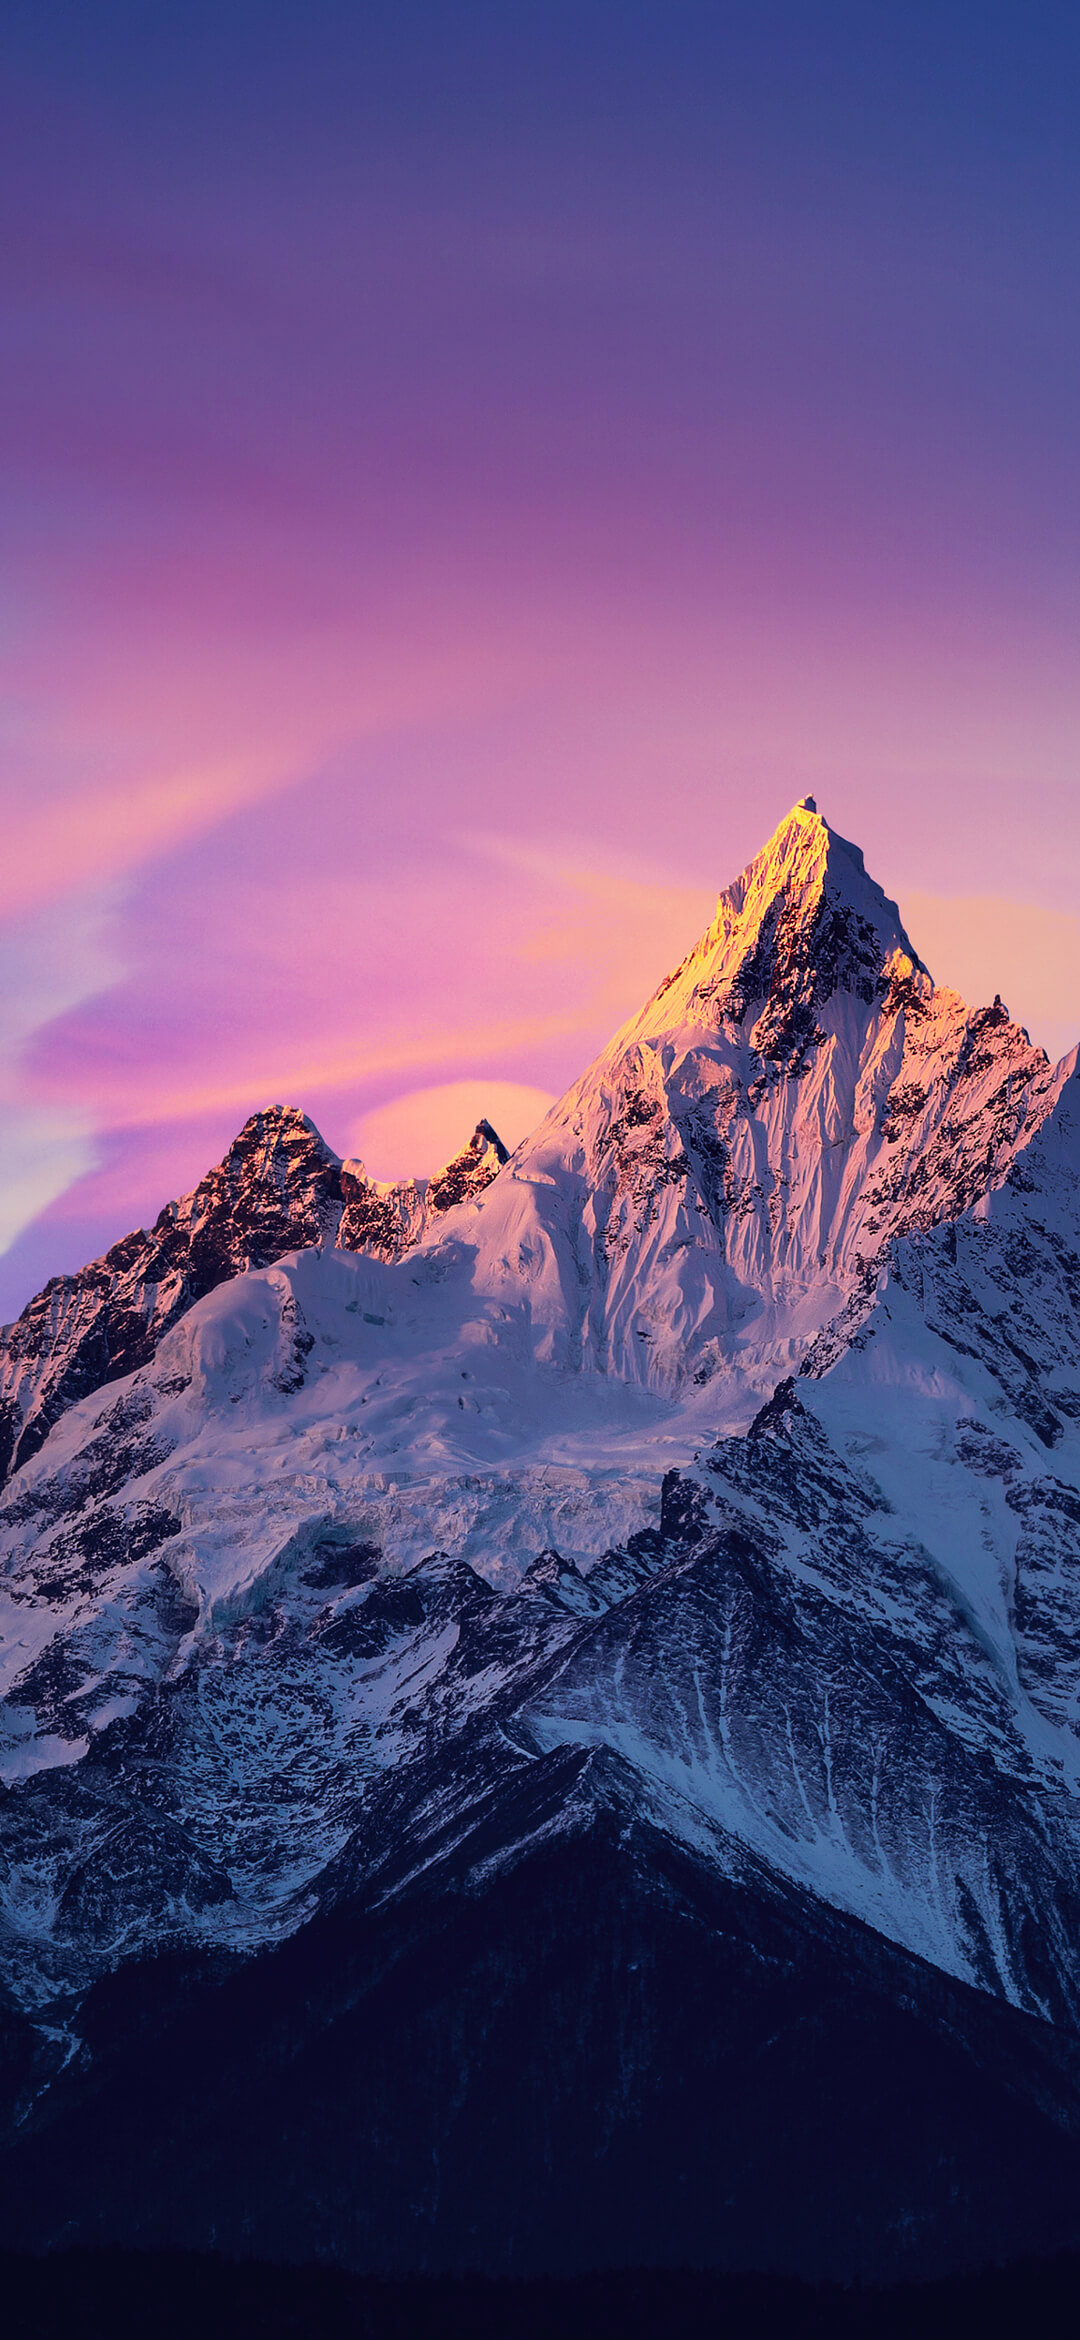 Wallpaper Mountain, Ios, Tablet, Cloud, Snow, Background: Những hình ảnh về núi, tuyết rơi, đám mây trời và phong cảnh thiên nhiên luôn làm cho con người cảm thấy thư thái và bình yên. Và bây giờ, bạn có thể tải về những hình nền đẹp này để thuận lợi trang trí cho thiết bị của mình.